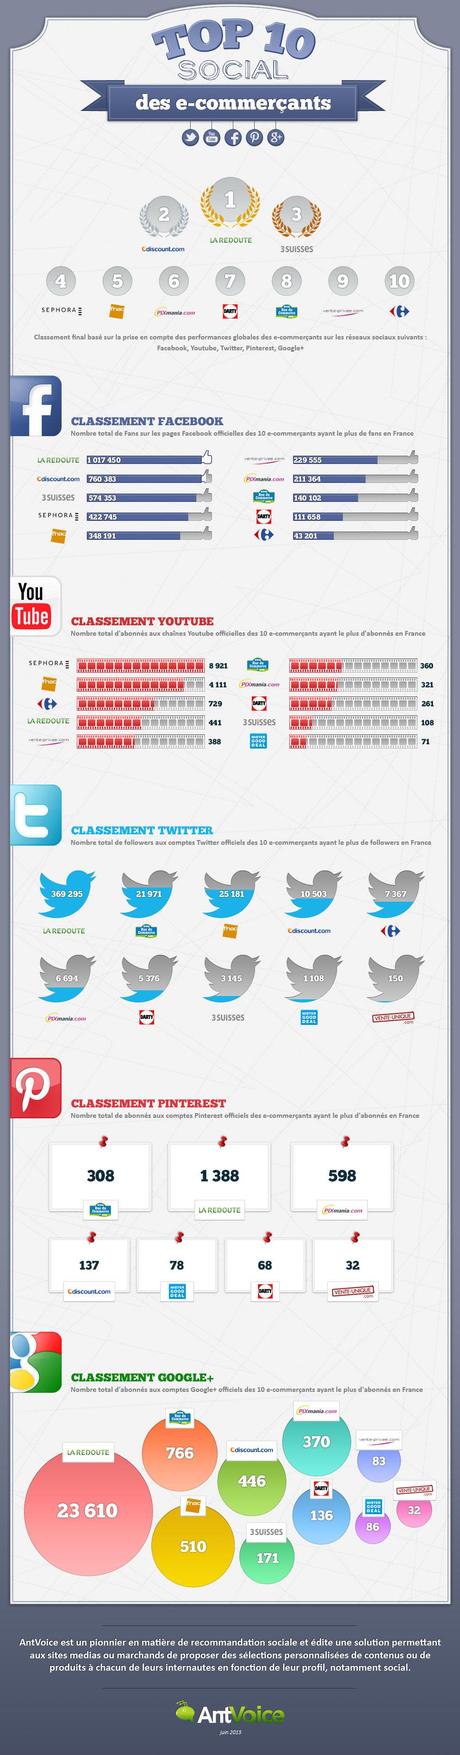 infographie top social e-commerçants en France